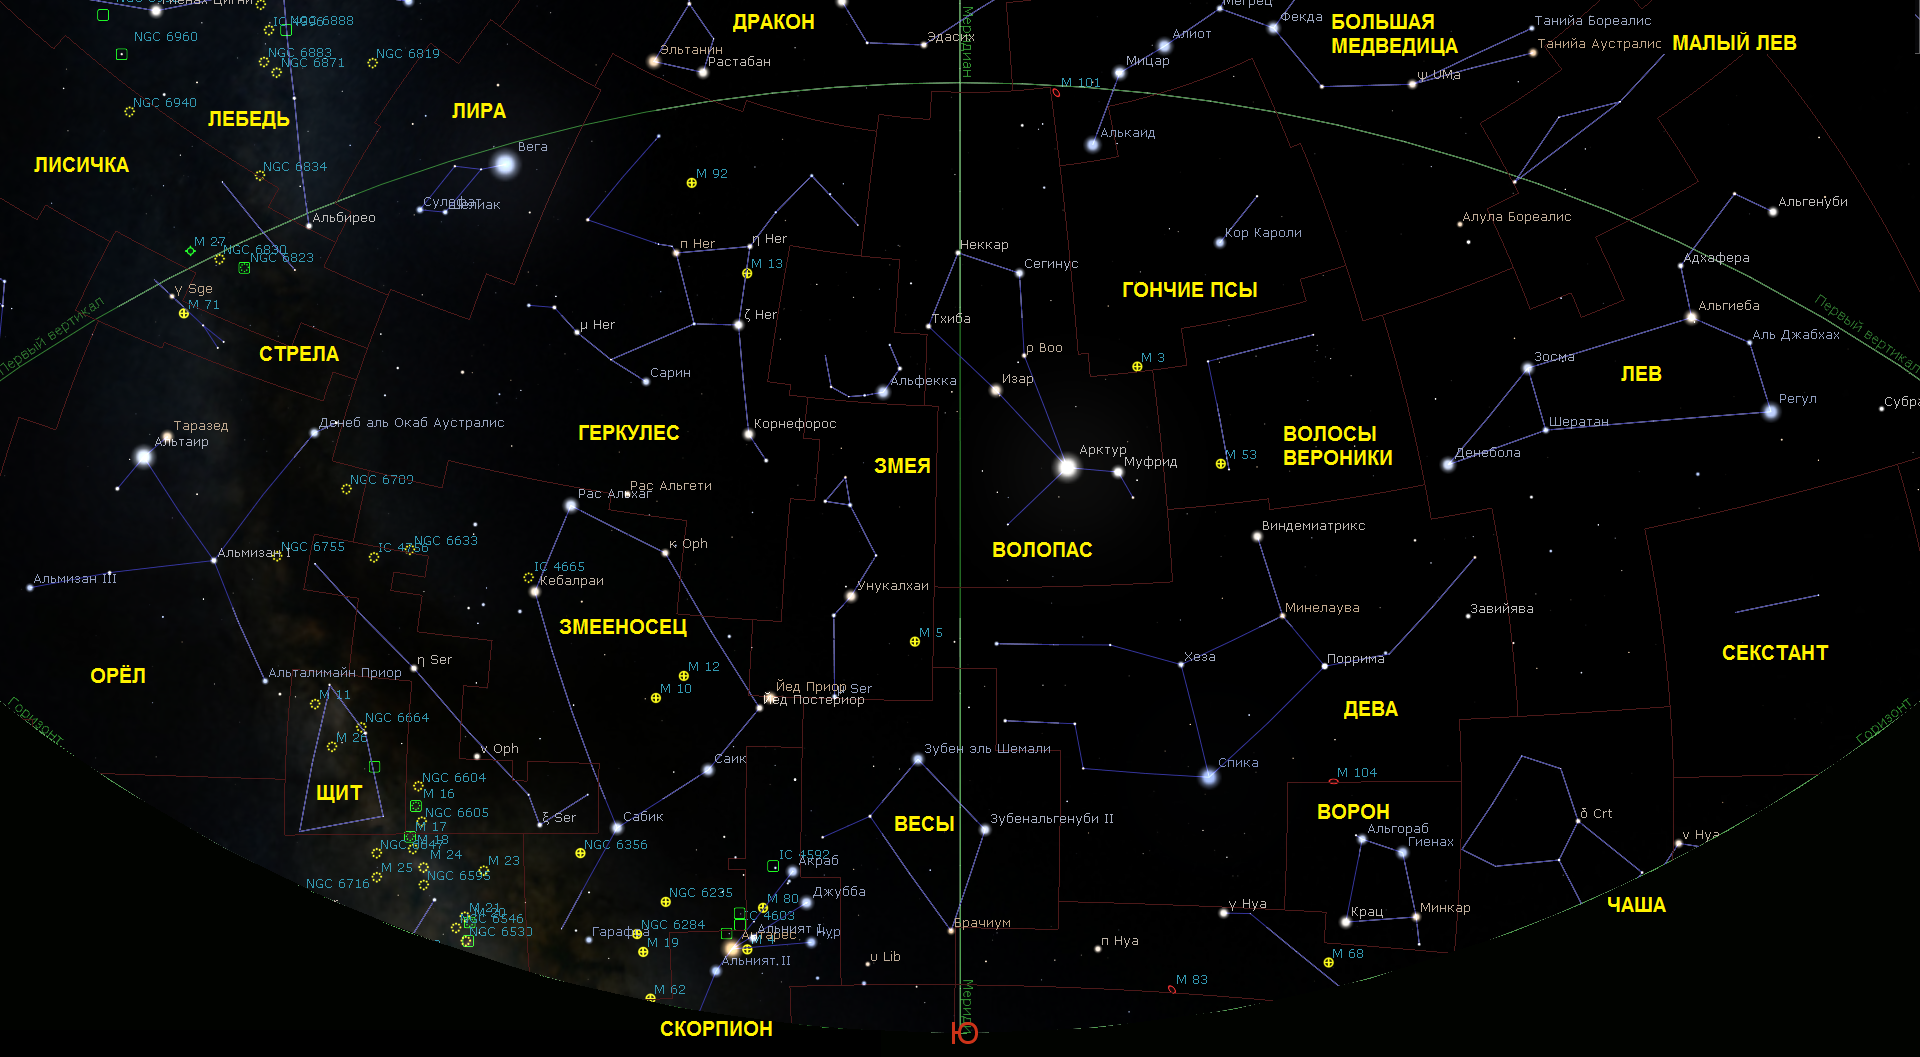 Карта звездного неба 88 созвездий. Созвездие скорпиона на карте звездного неба. Созвездия Северного полушария. Карта созвездий Северного полушария.